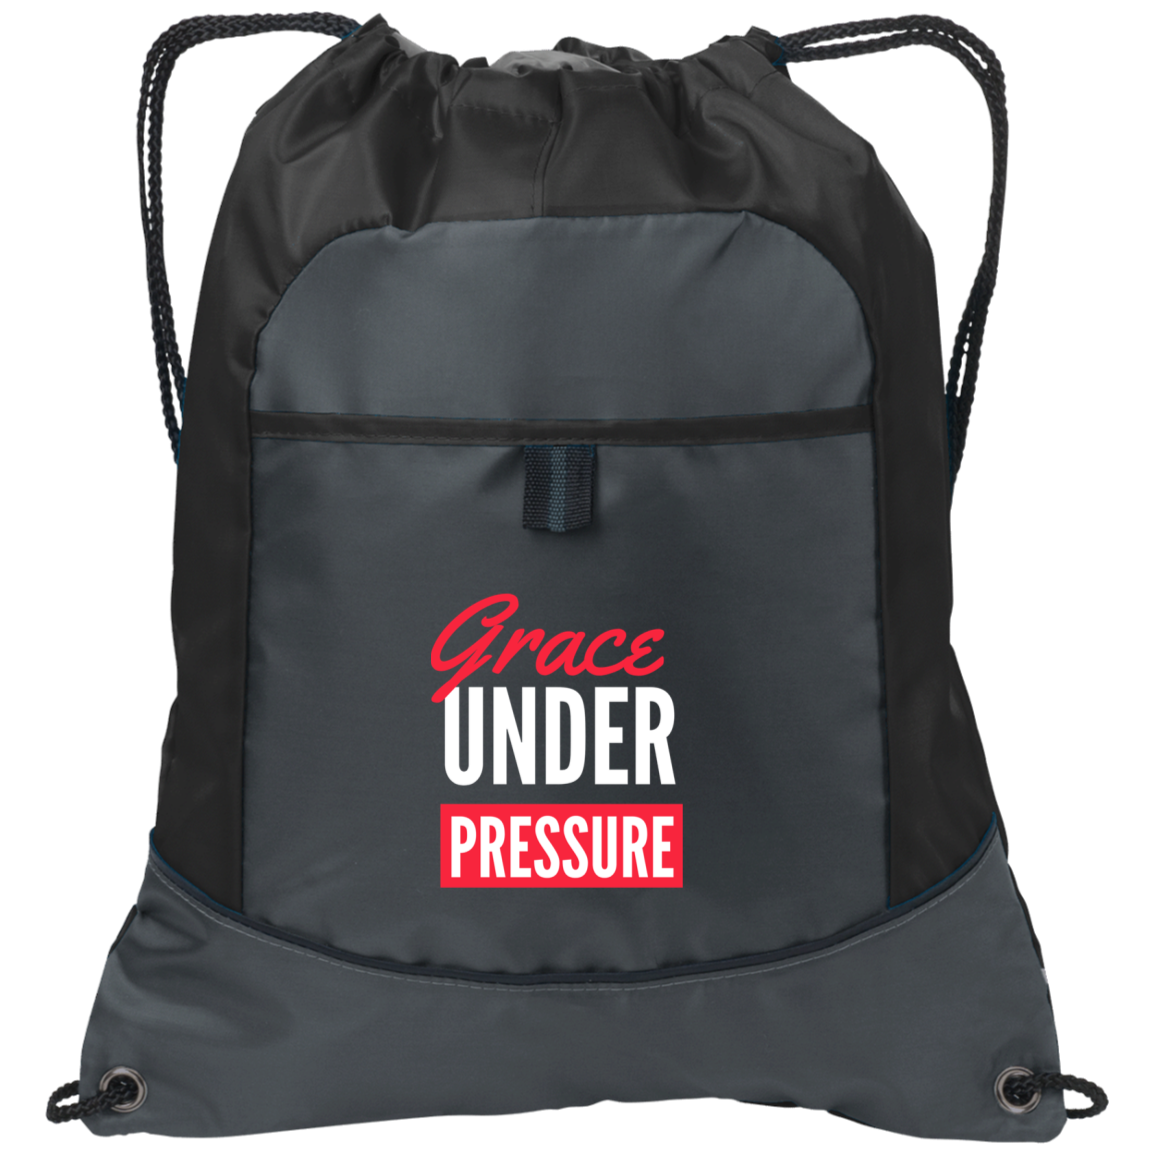 GRACE UNDER PRESSURE CINCH BAG W/ POCKET